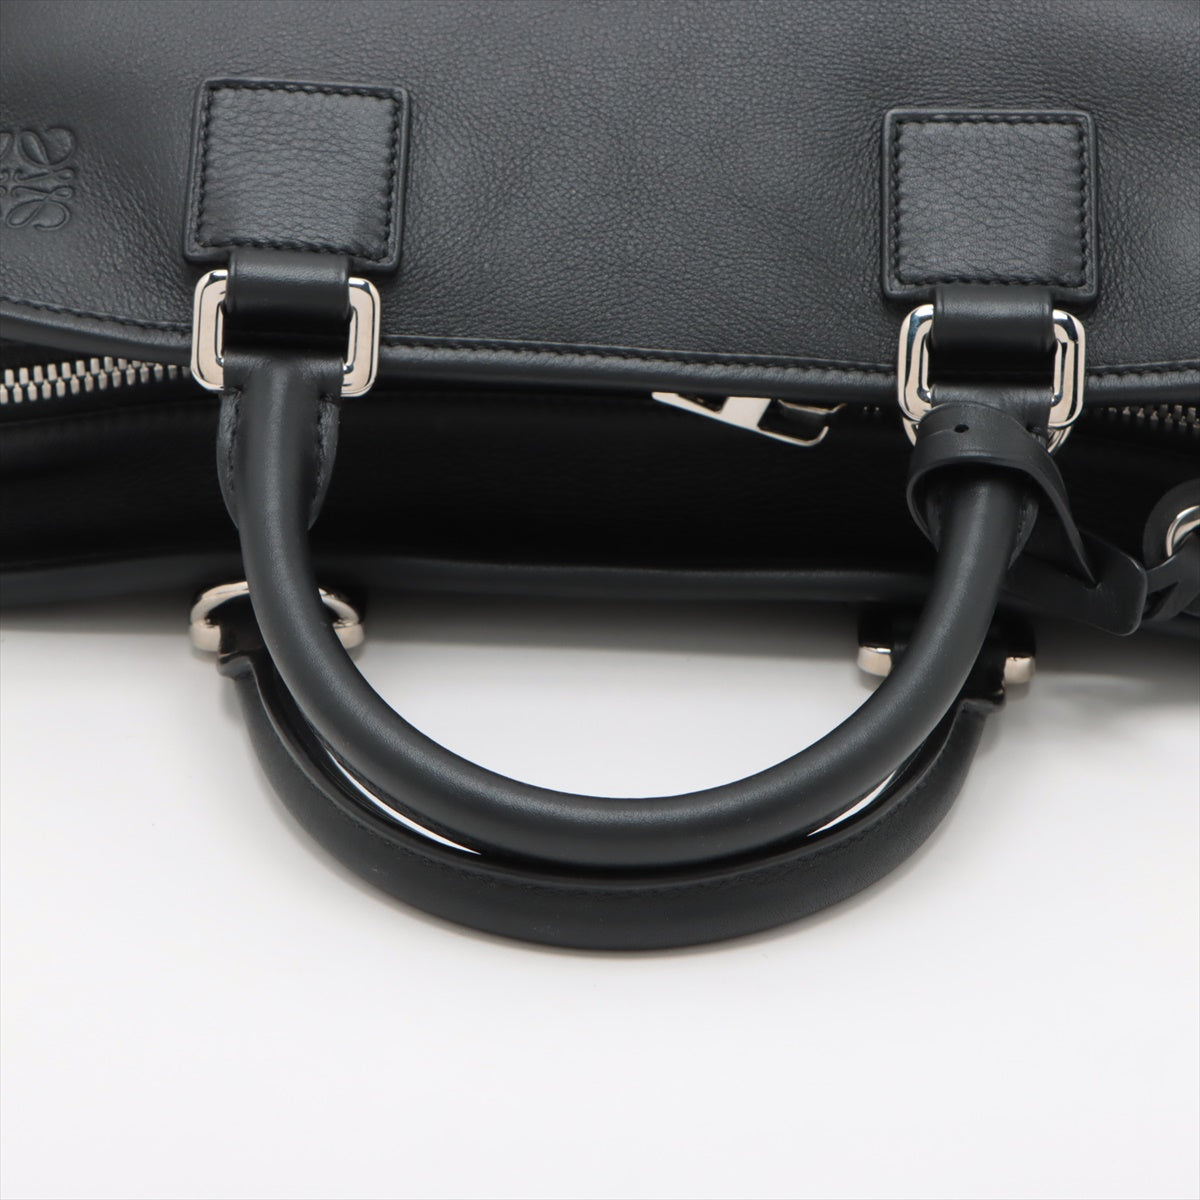 Loewe Amazona 28 Leather 2way handbag Black